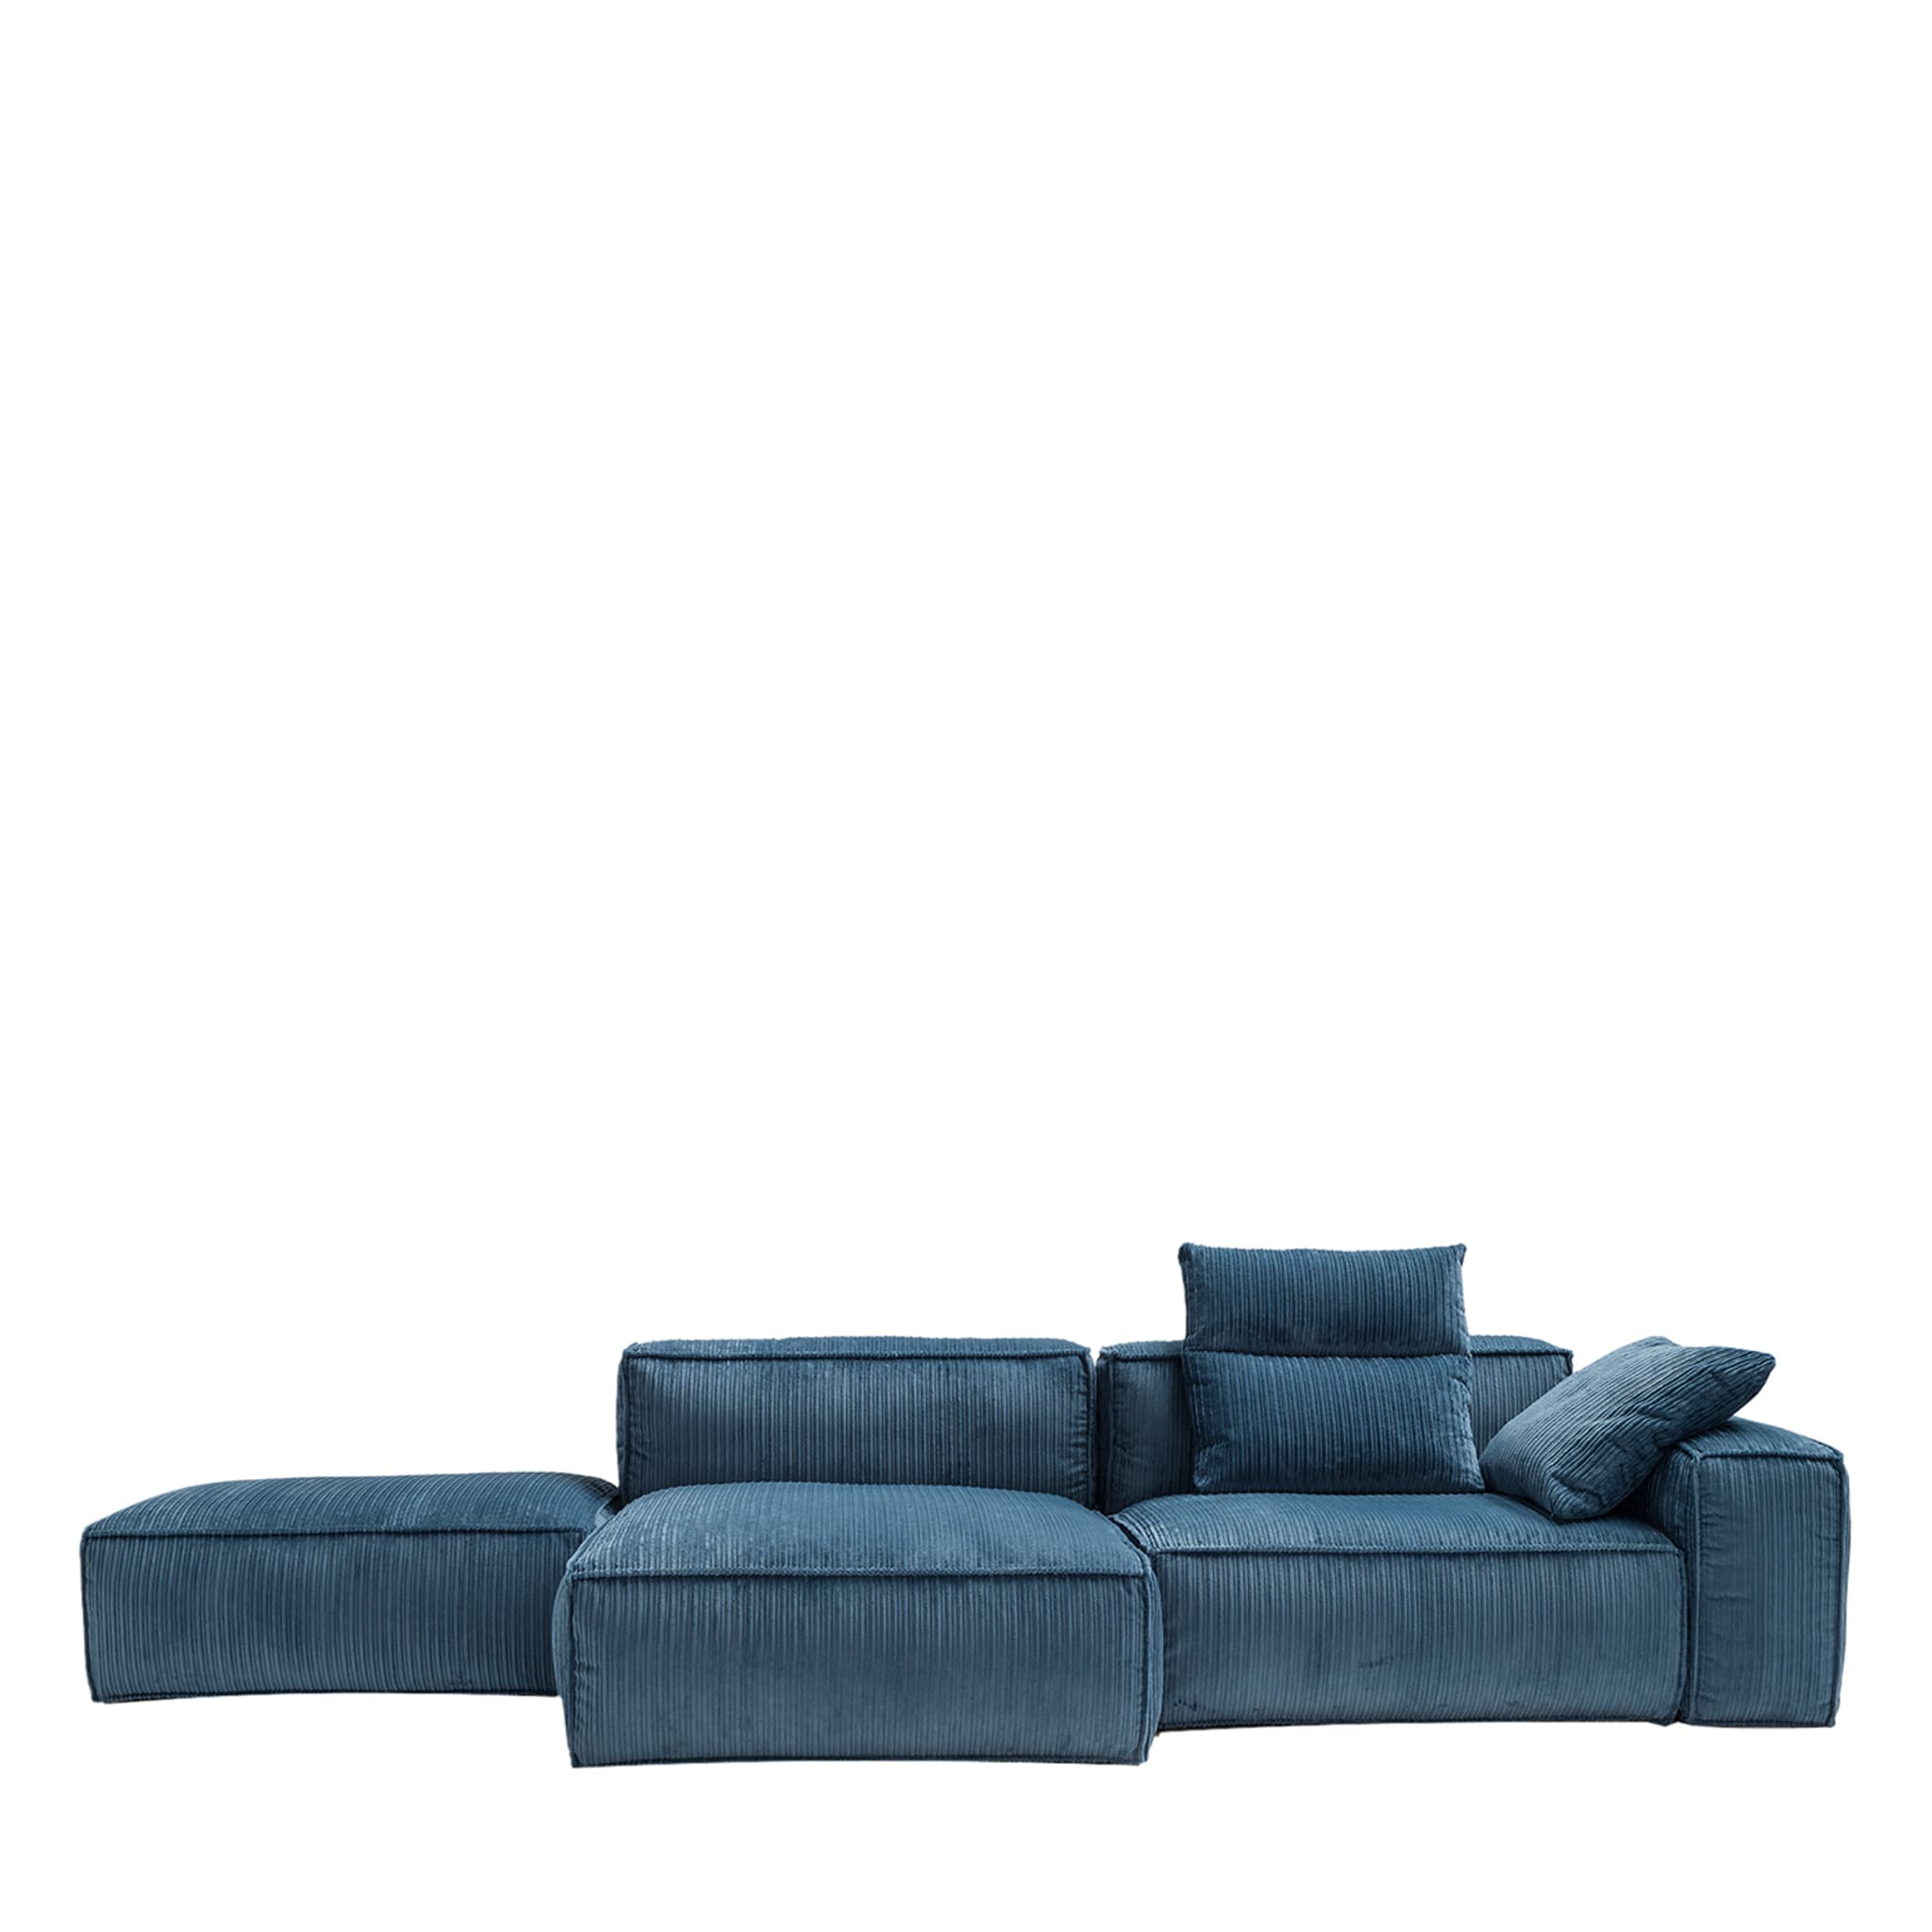 Astor Blue Sofa - Main view